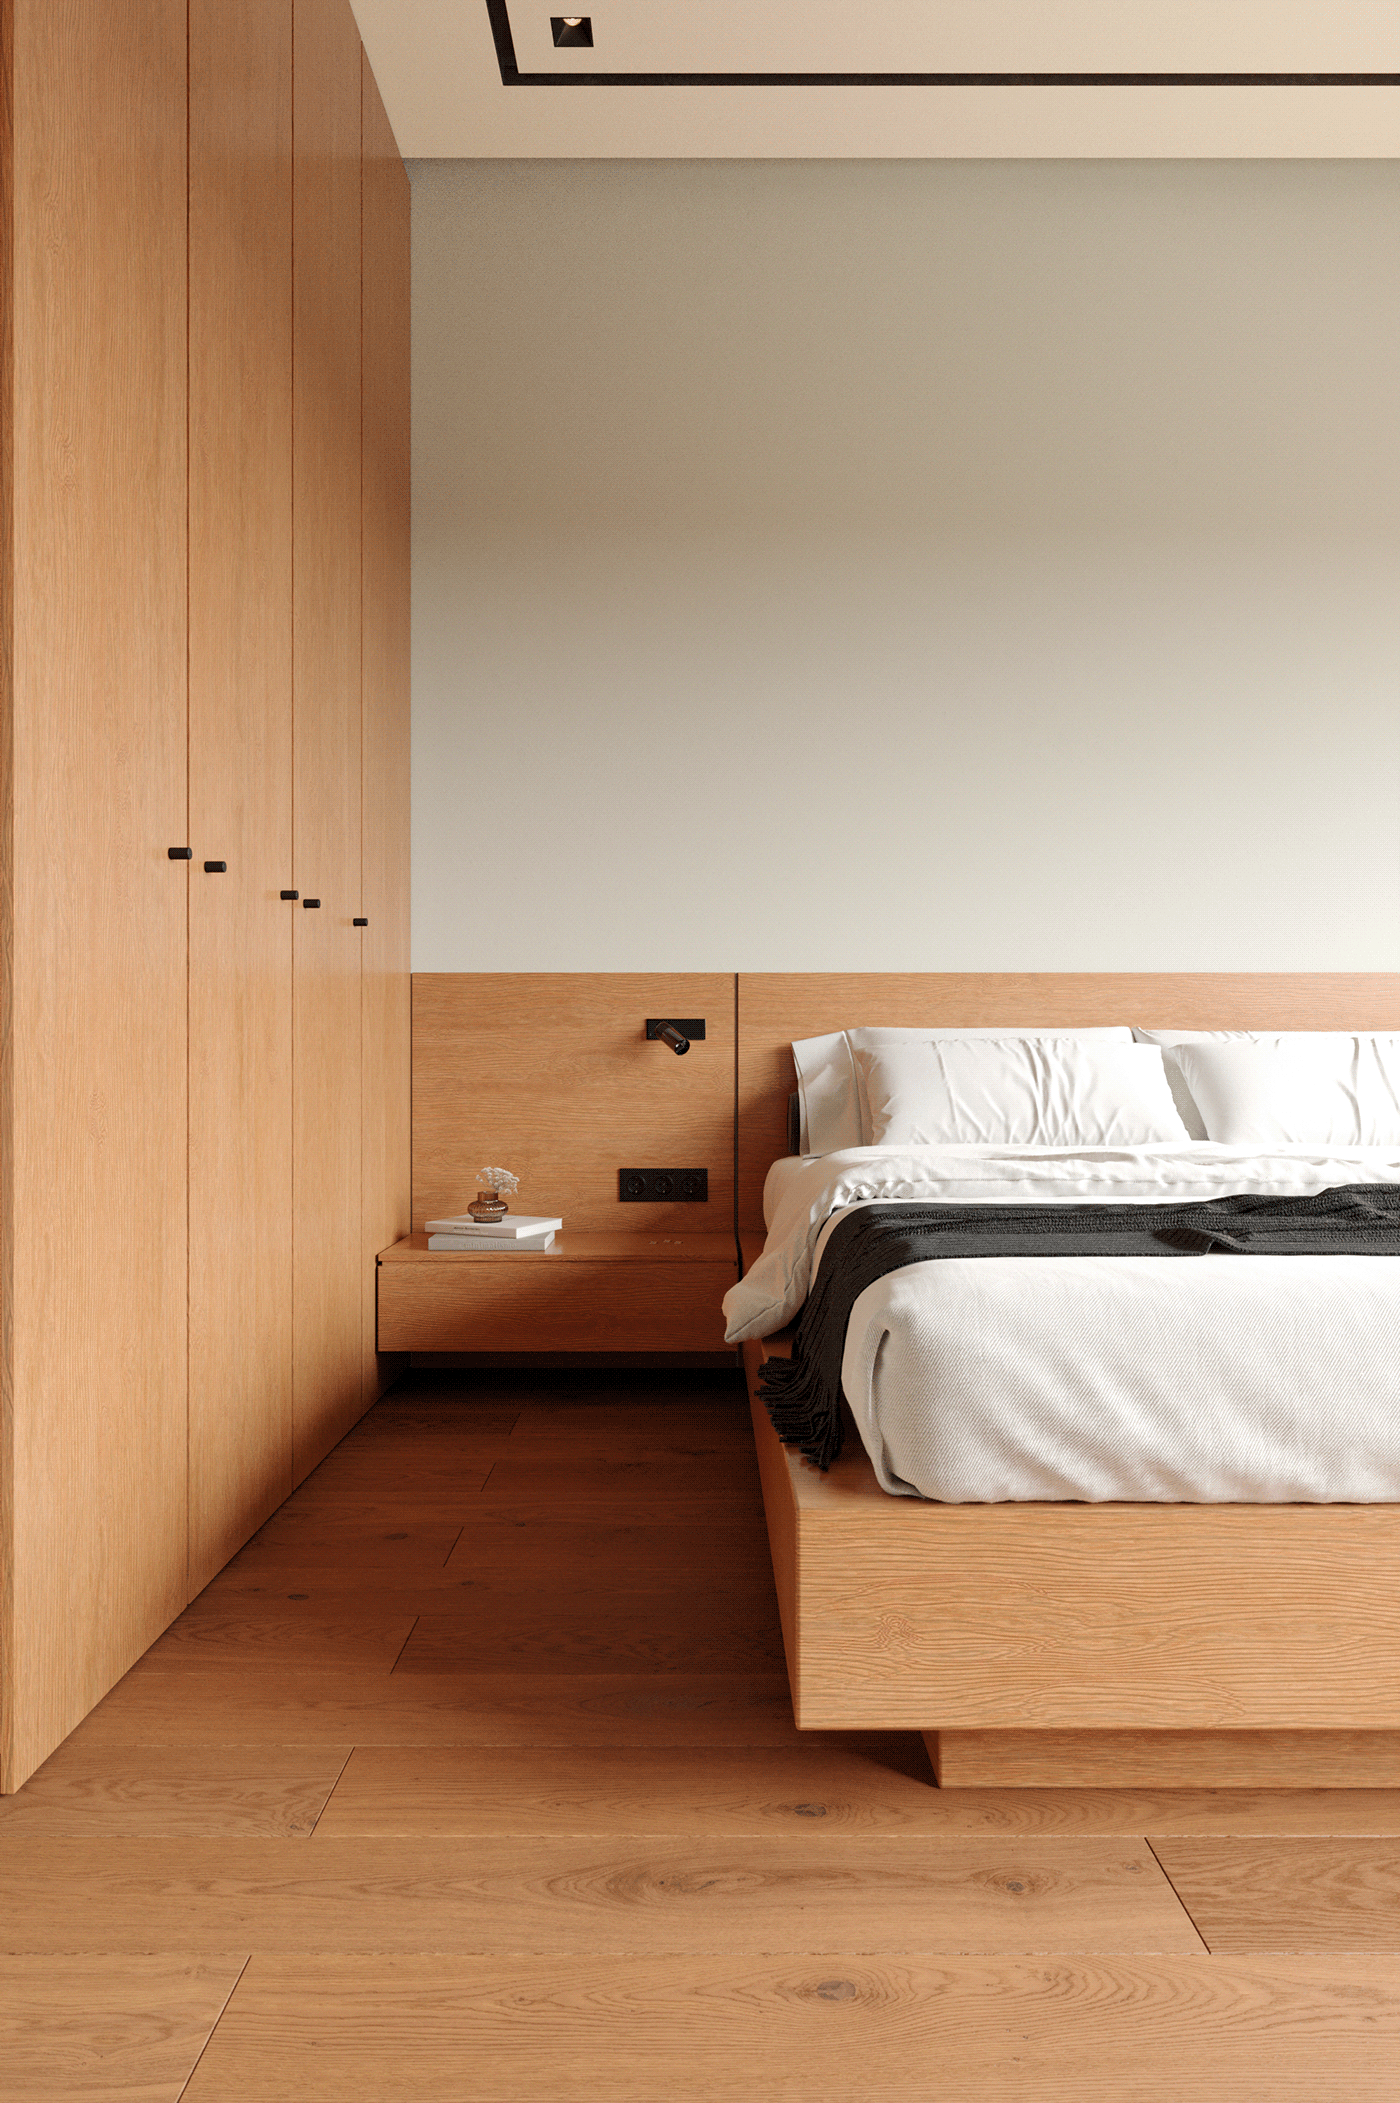 cozy modern wood bedroom Bedroom interior bedroom design bed bedroomdesign Render interior design 